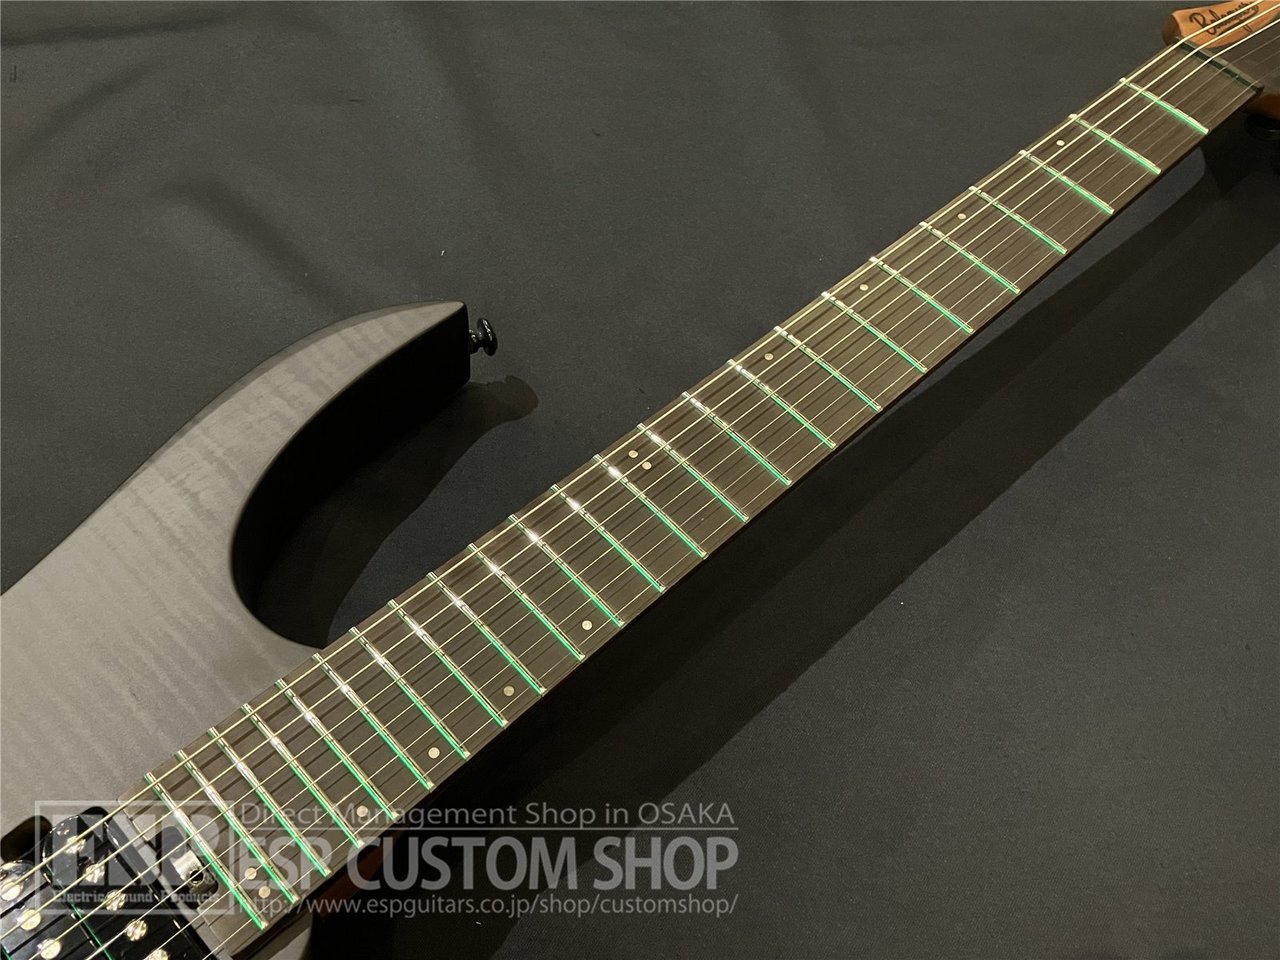 【即納可能】Balaguer Guitars(バラゲールギターズ)  Diablo Standard with Evertune Bridge / Satin Trans Black　大阪店